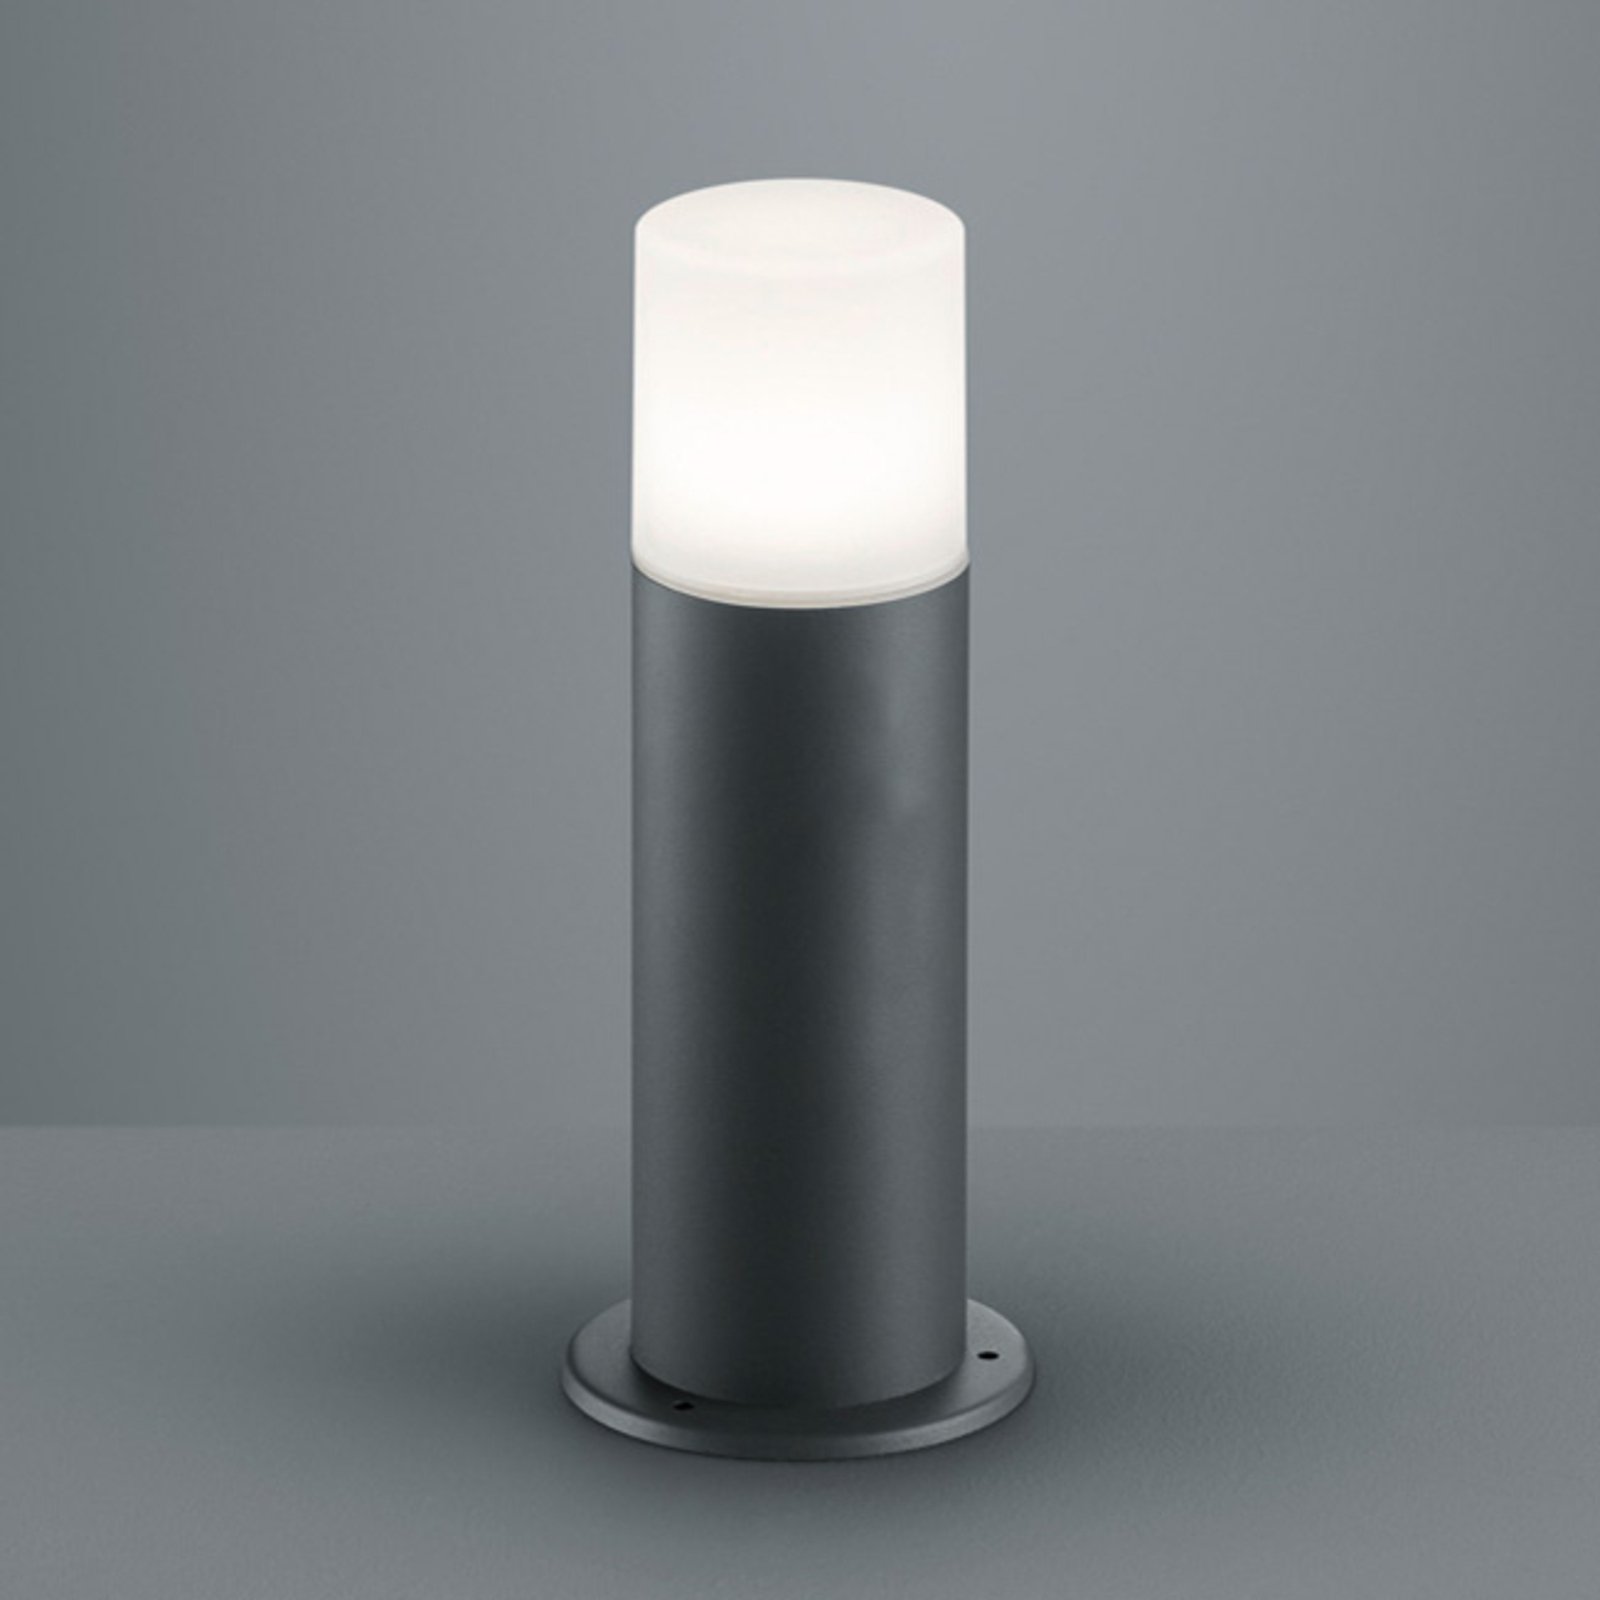 "Hoosic" aliuminio liejinio pagrindo šviestuvas, antracito spalvos